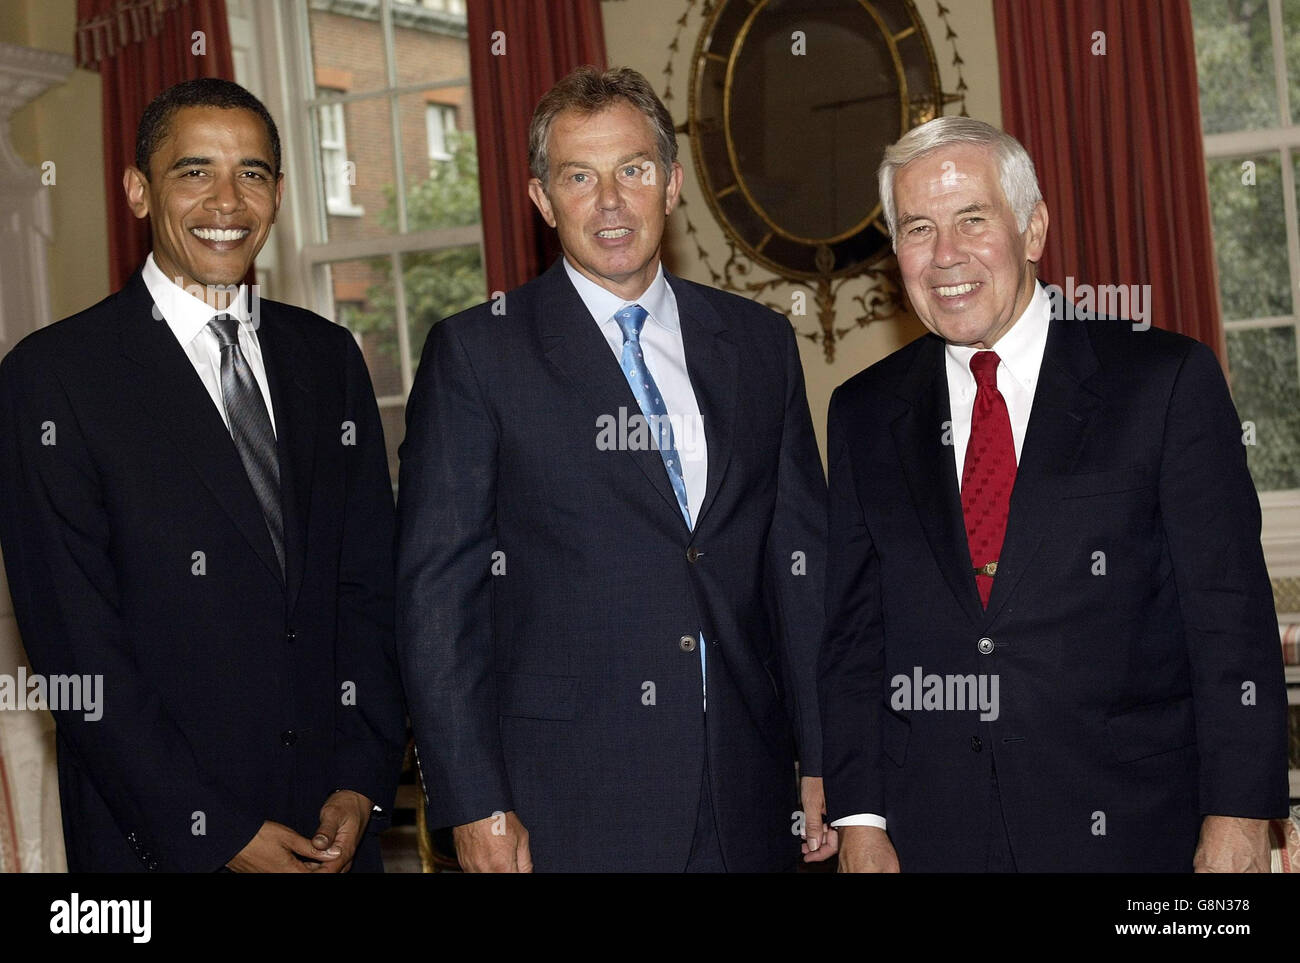 Il primo ministro britannico Tony Blair (Centro) con i senatori degli Stati Uniti (da sinistra a destra) Barack Obama e Richard G Lugar, giovedì 1 settembre 2005 durante un incontro nel 10 Downing Street nel centro di Londra. PREMERE ASSOCIAZIONE foto. Il credito fotografico dovrebbe essere: Colin Davey/PA/Daily Mail/NPA Rota Foto Stock